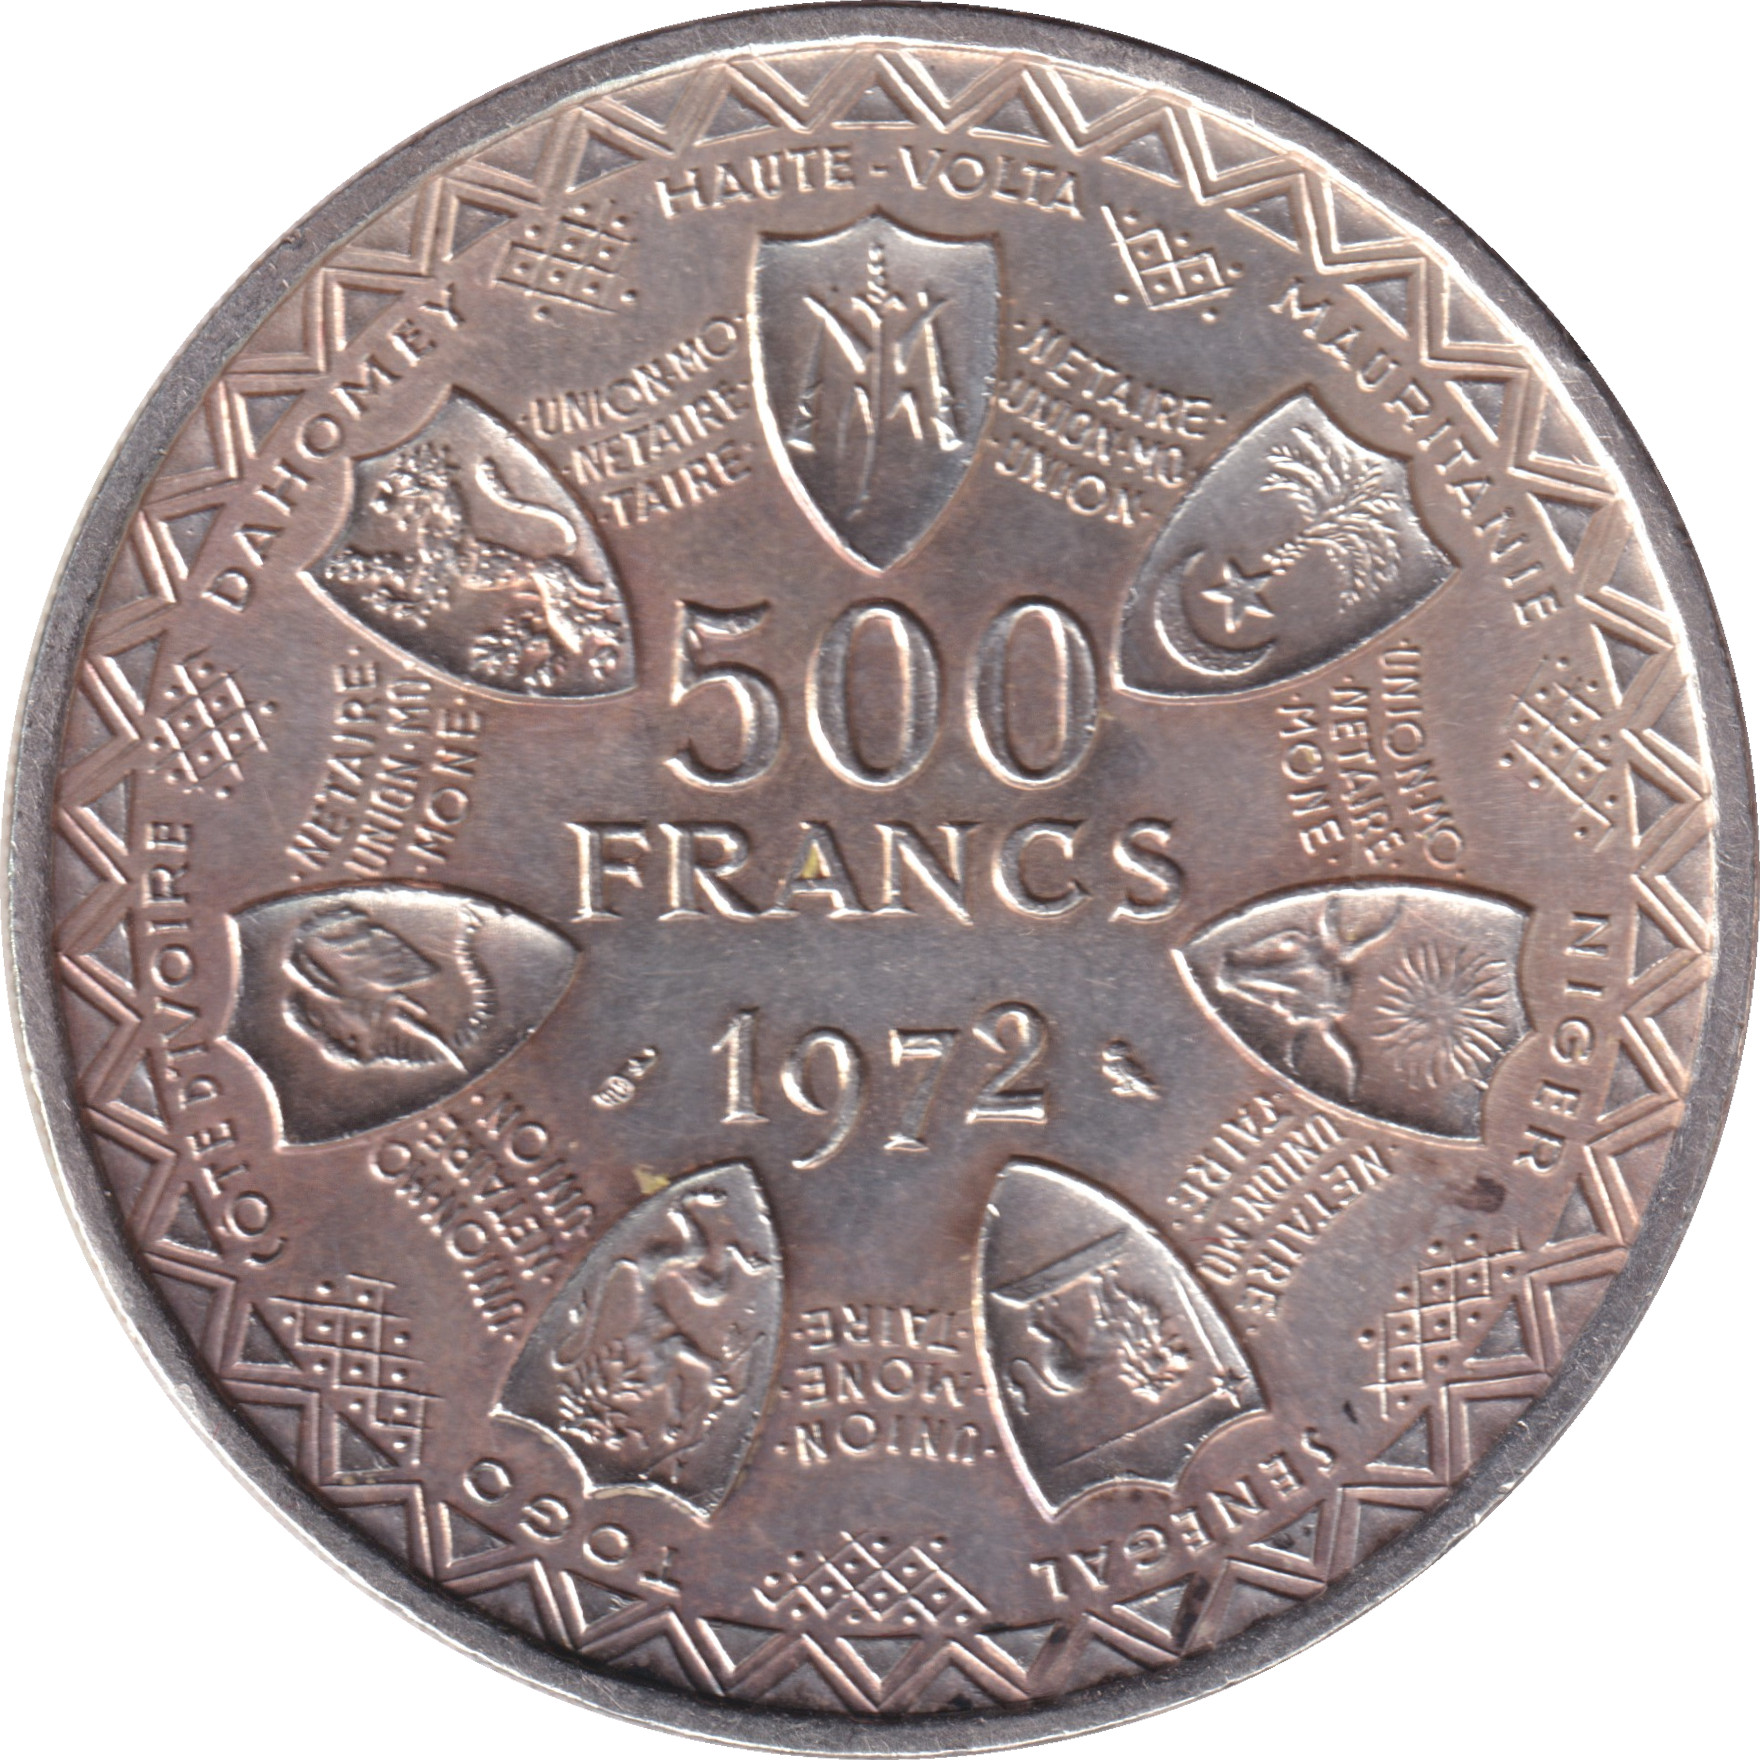 500 francs - Union monétaire - 10 years